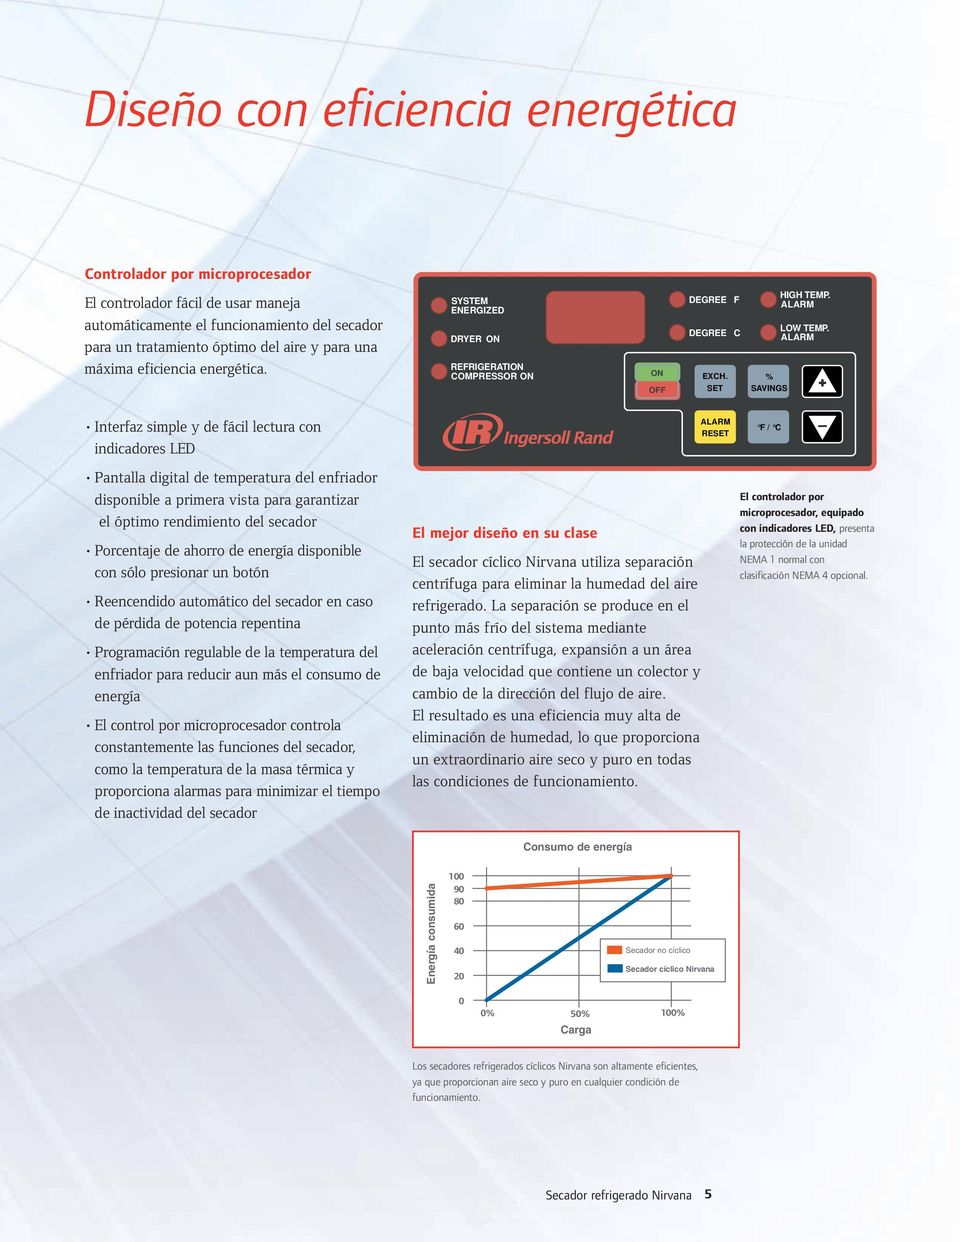 ALARM + Interfaz simple y de fácil lectura con indicadores LED ALARM RESET F / C _ Pantalla digital de temperatura del enfriador disponible a primera vista para garantizar el óptimo rendimiento del